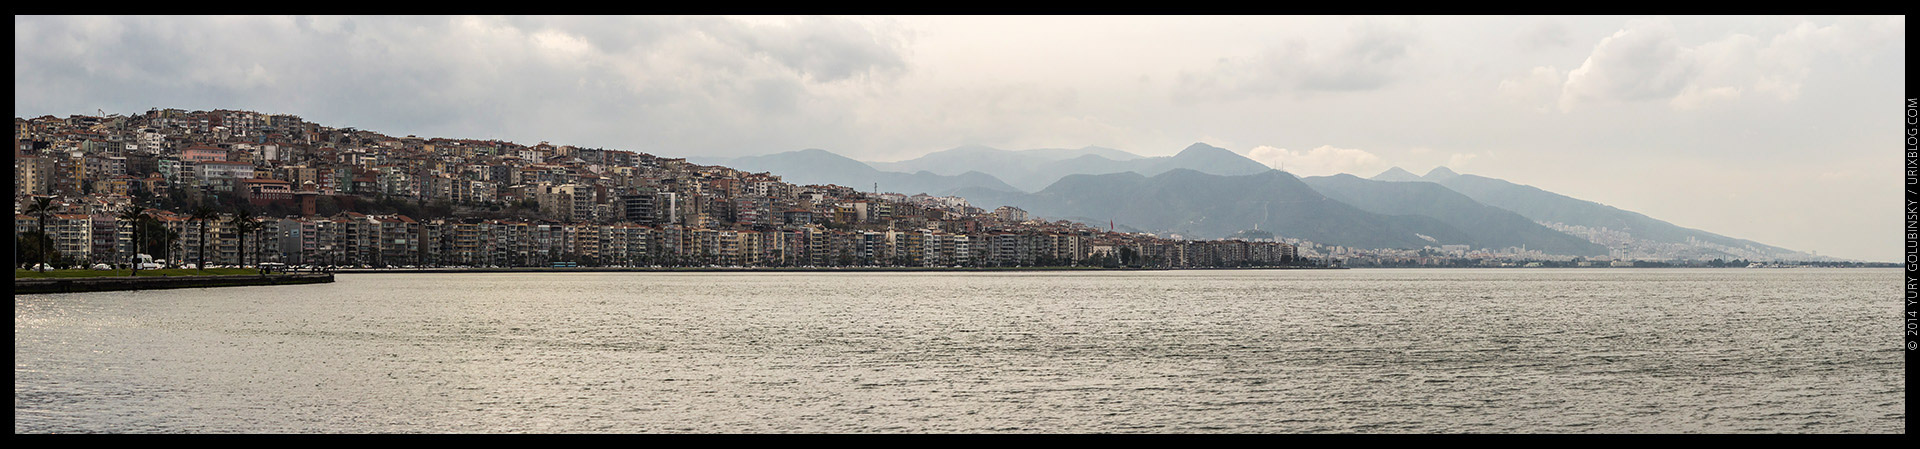 Измир, залив, Турция, панорама, горизонт, Эгейское море, набережная, корабли, 2014